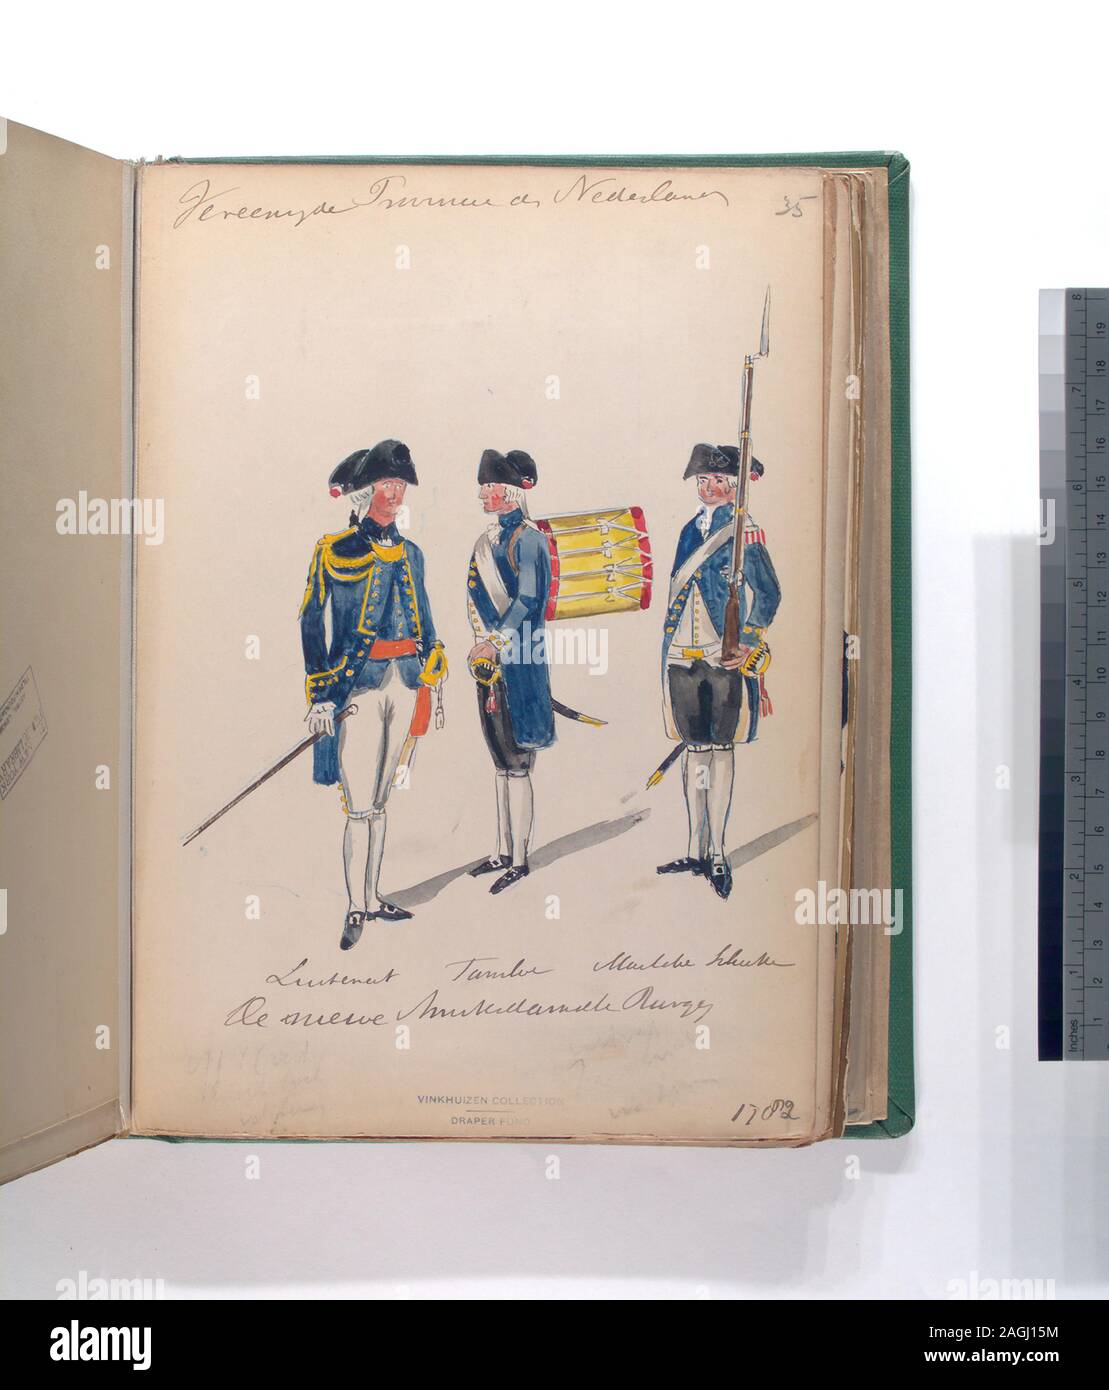 Draper Fund; Luitenant, Tambour, [...] Schutter de niewe Amsterdamsche Burgerij. 1782 Stock Photo